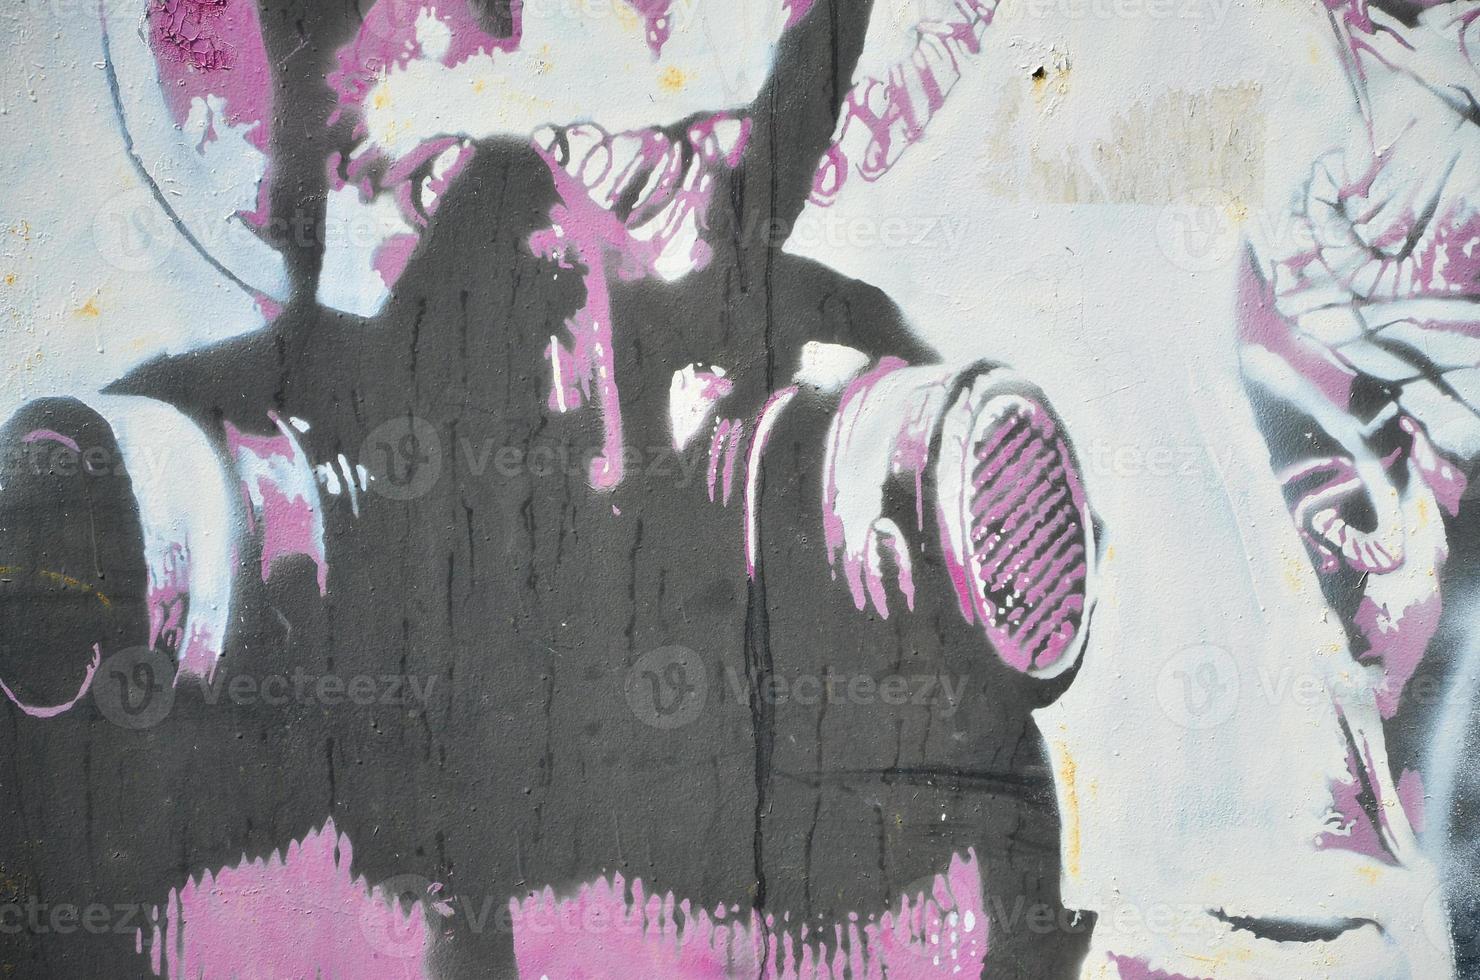 de gammal vägg, målad i Färg graffiti teckning med aerosol färger. bild av en gas mask i en stencil stil foto